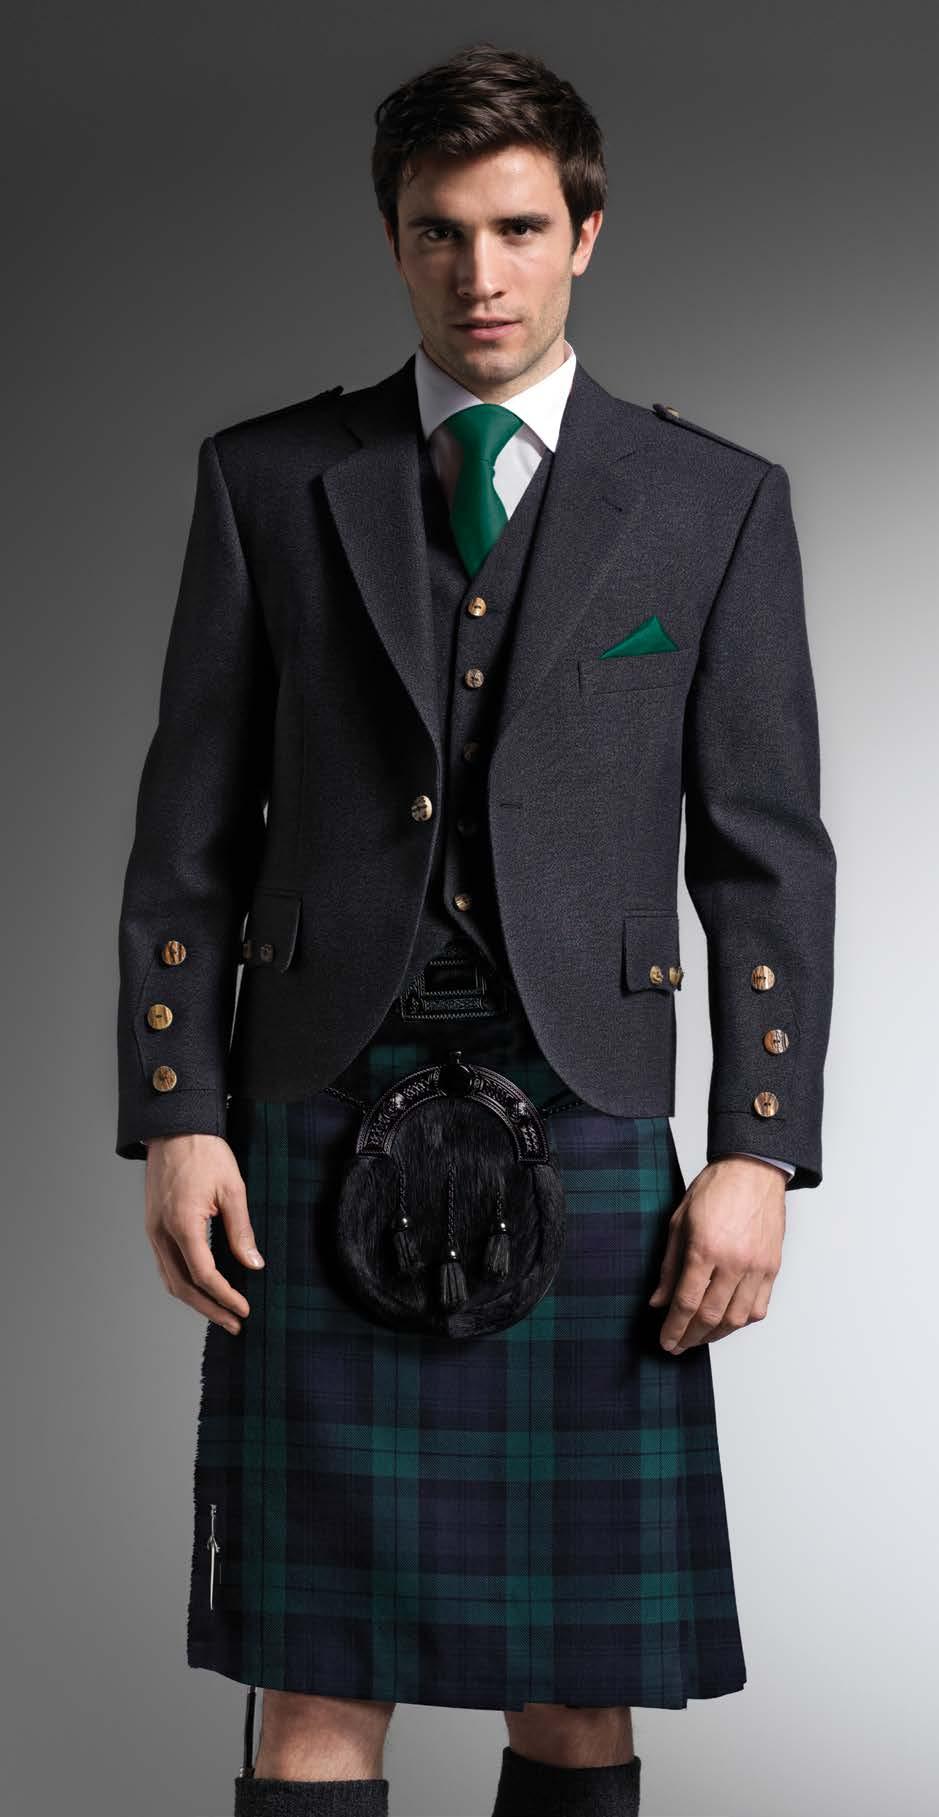 Sporran, Dark Green Tie and matching Hankie Scottish Spirit Kilt Worn with Grey Tweed Jacket, 5-Button Waistcoat, Victorian